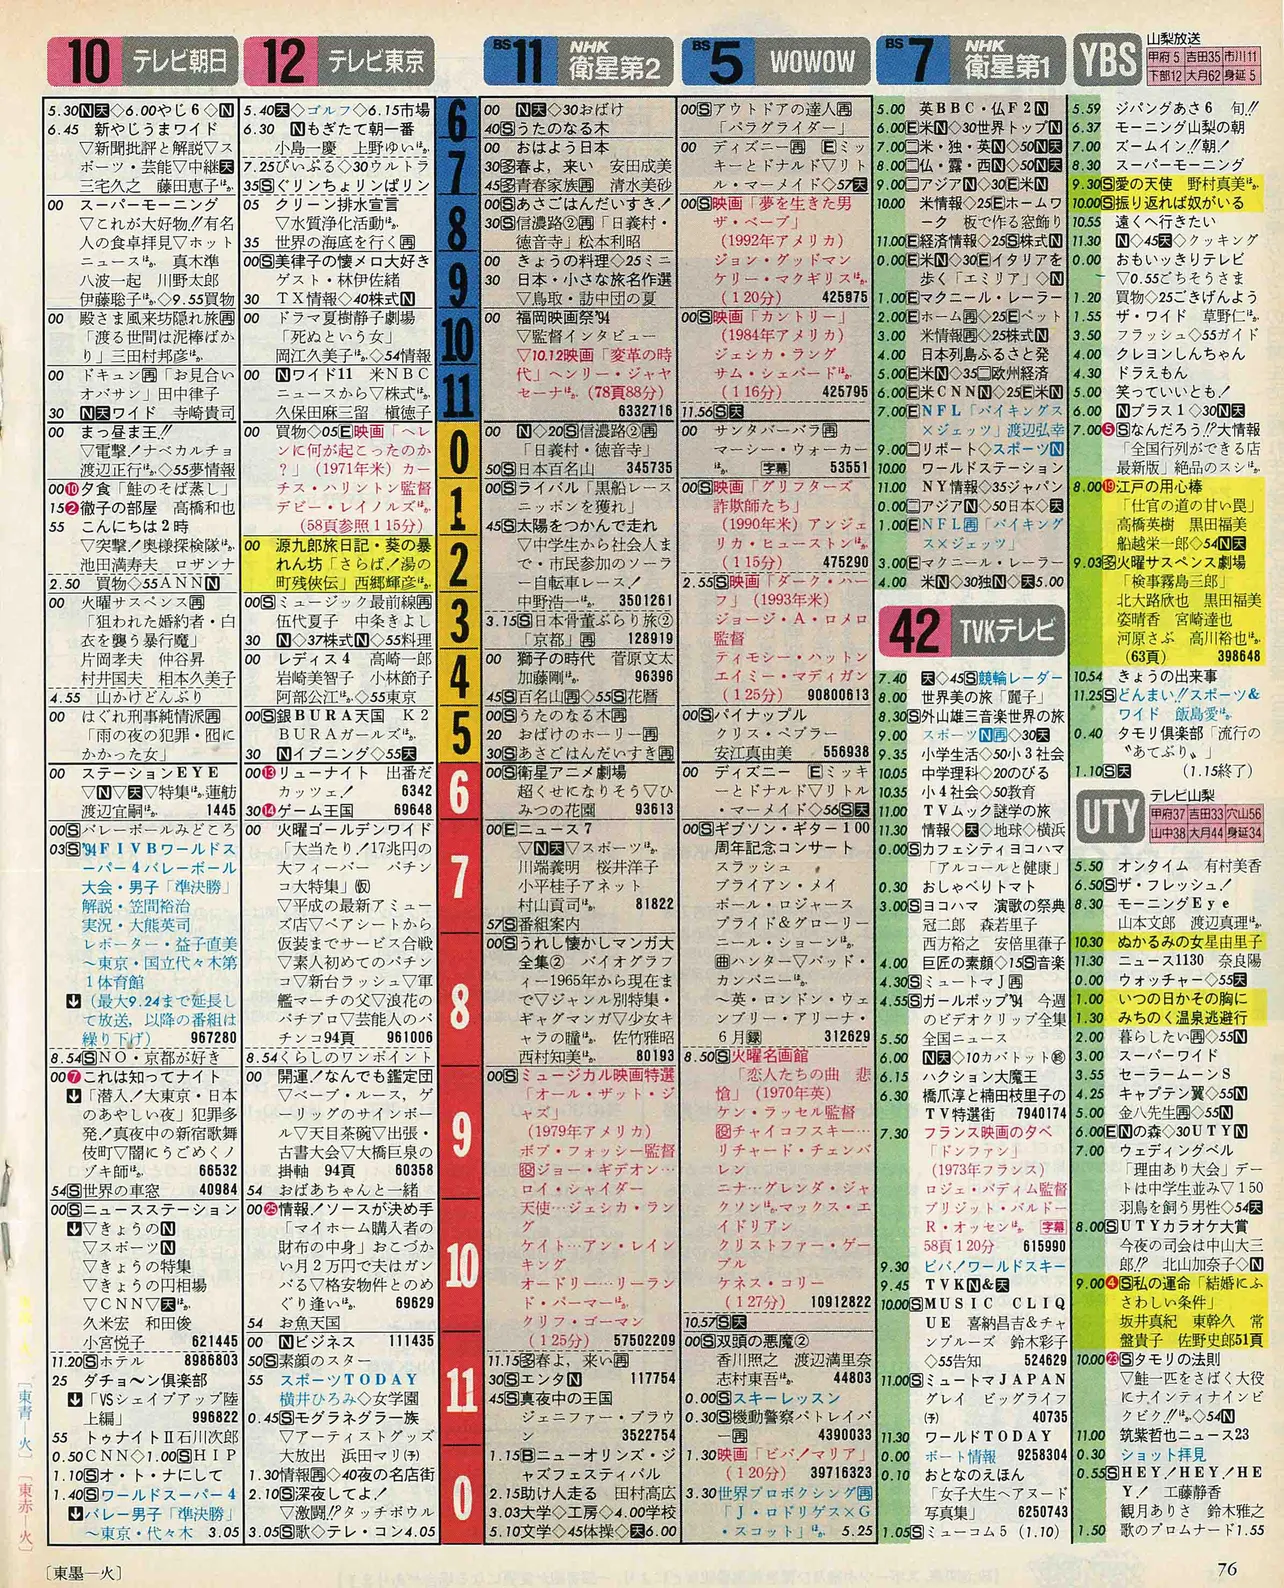 川島如恵留のバースデー番組表（右）　1994年11月22日